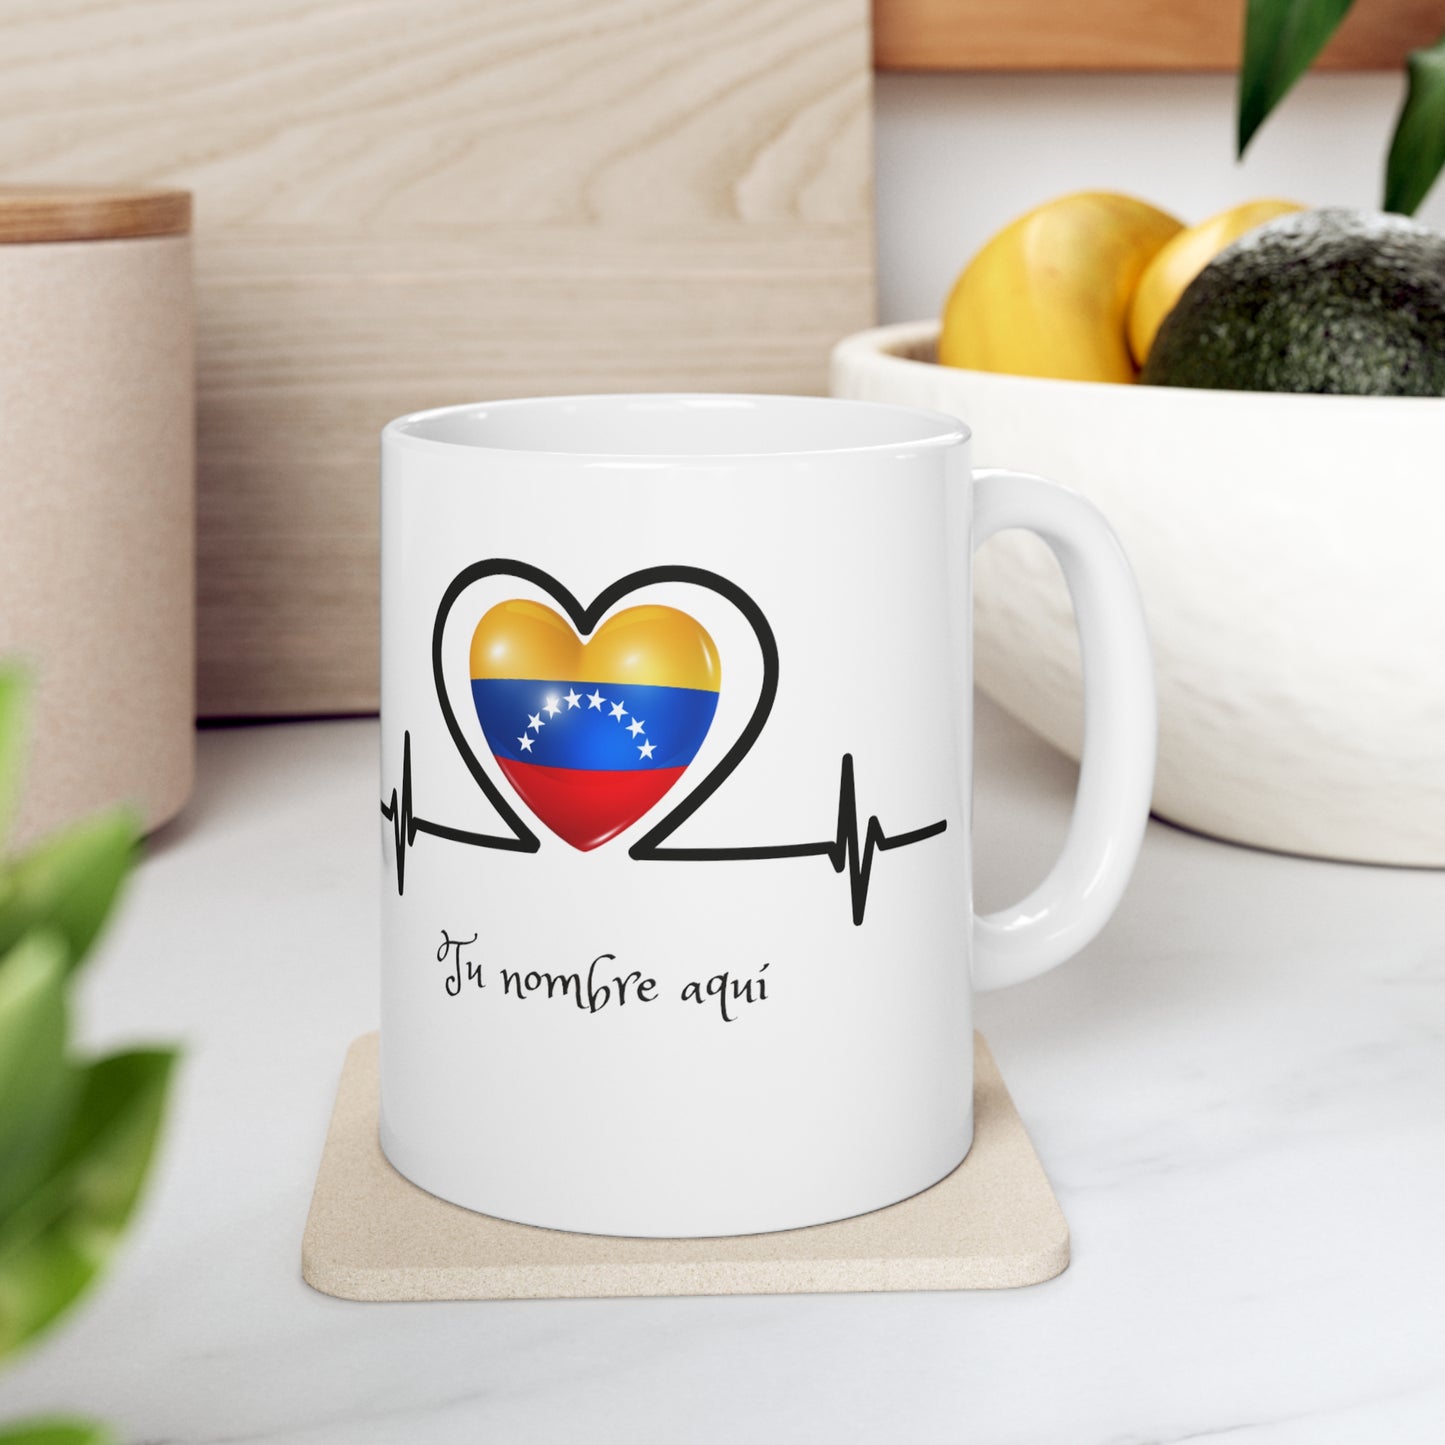 Ceramic Mug 11 oz - Custom - Venezuela's flag